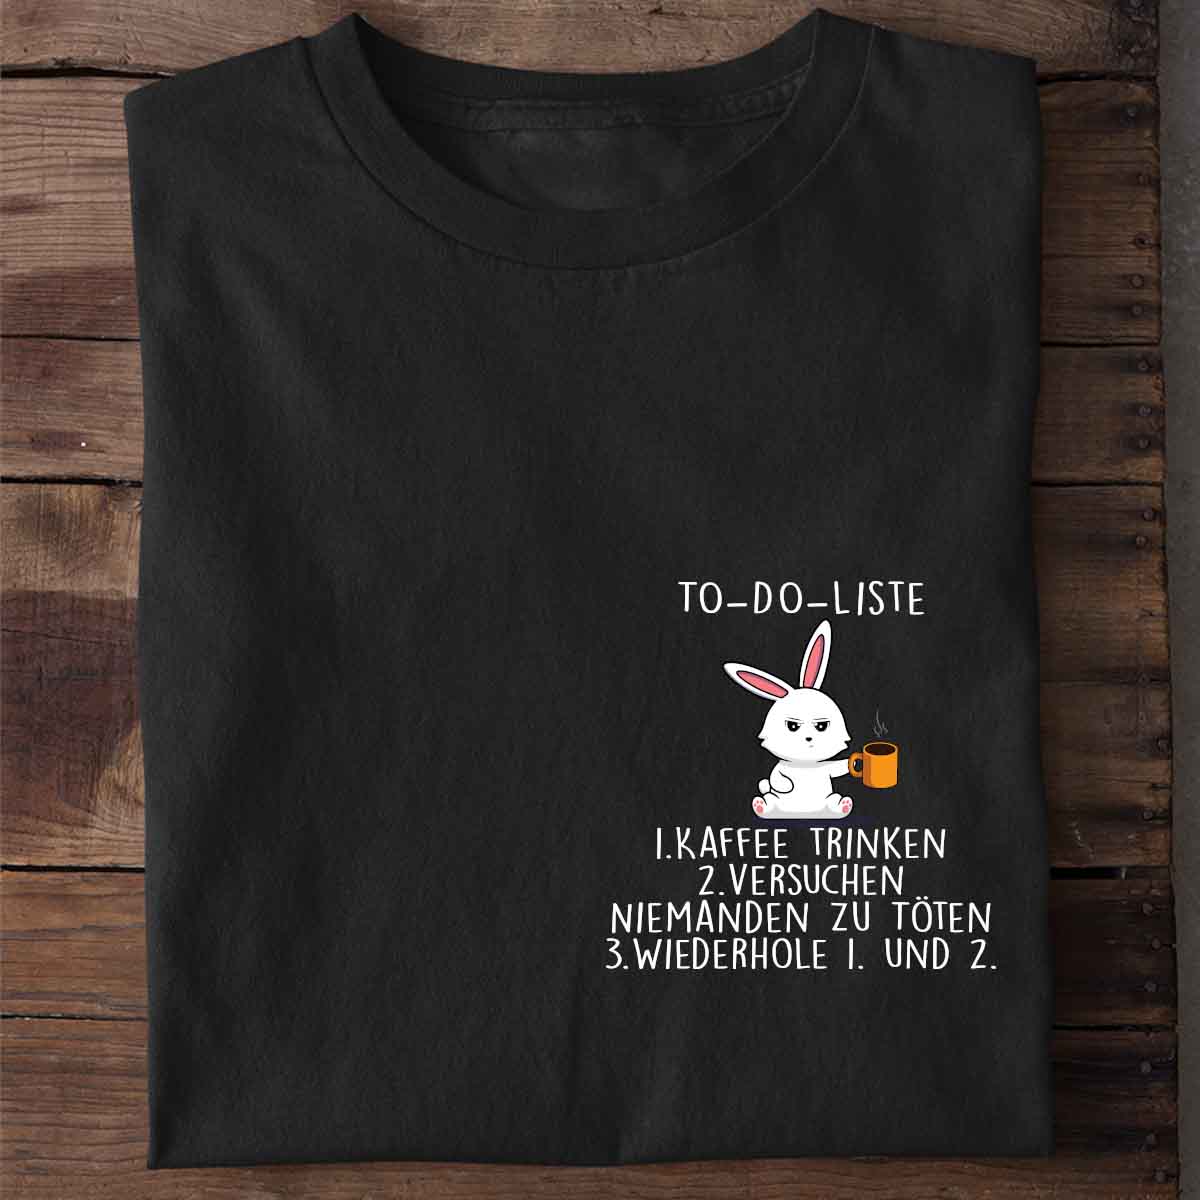 To-Do Bunny Brust - Shirt Unisex